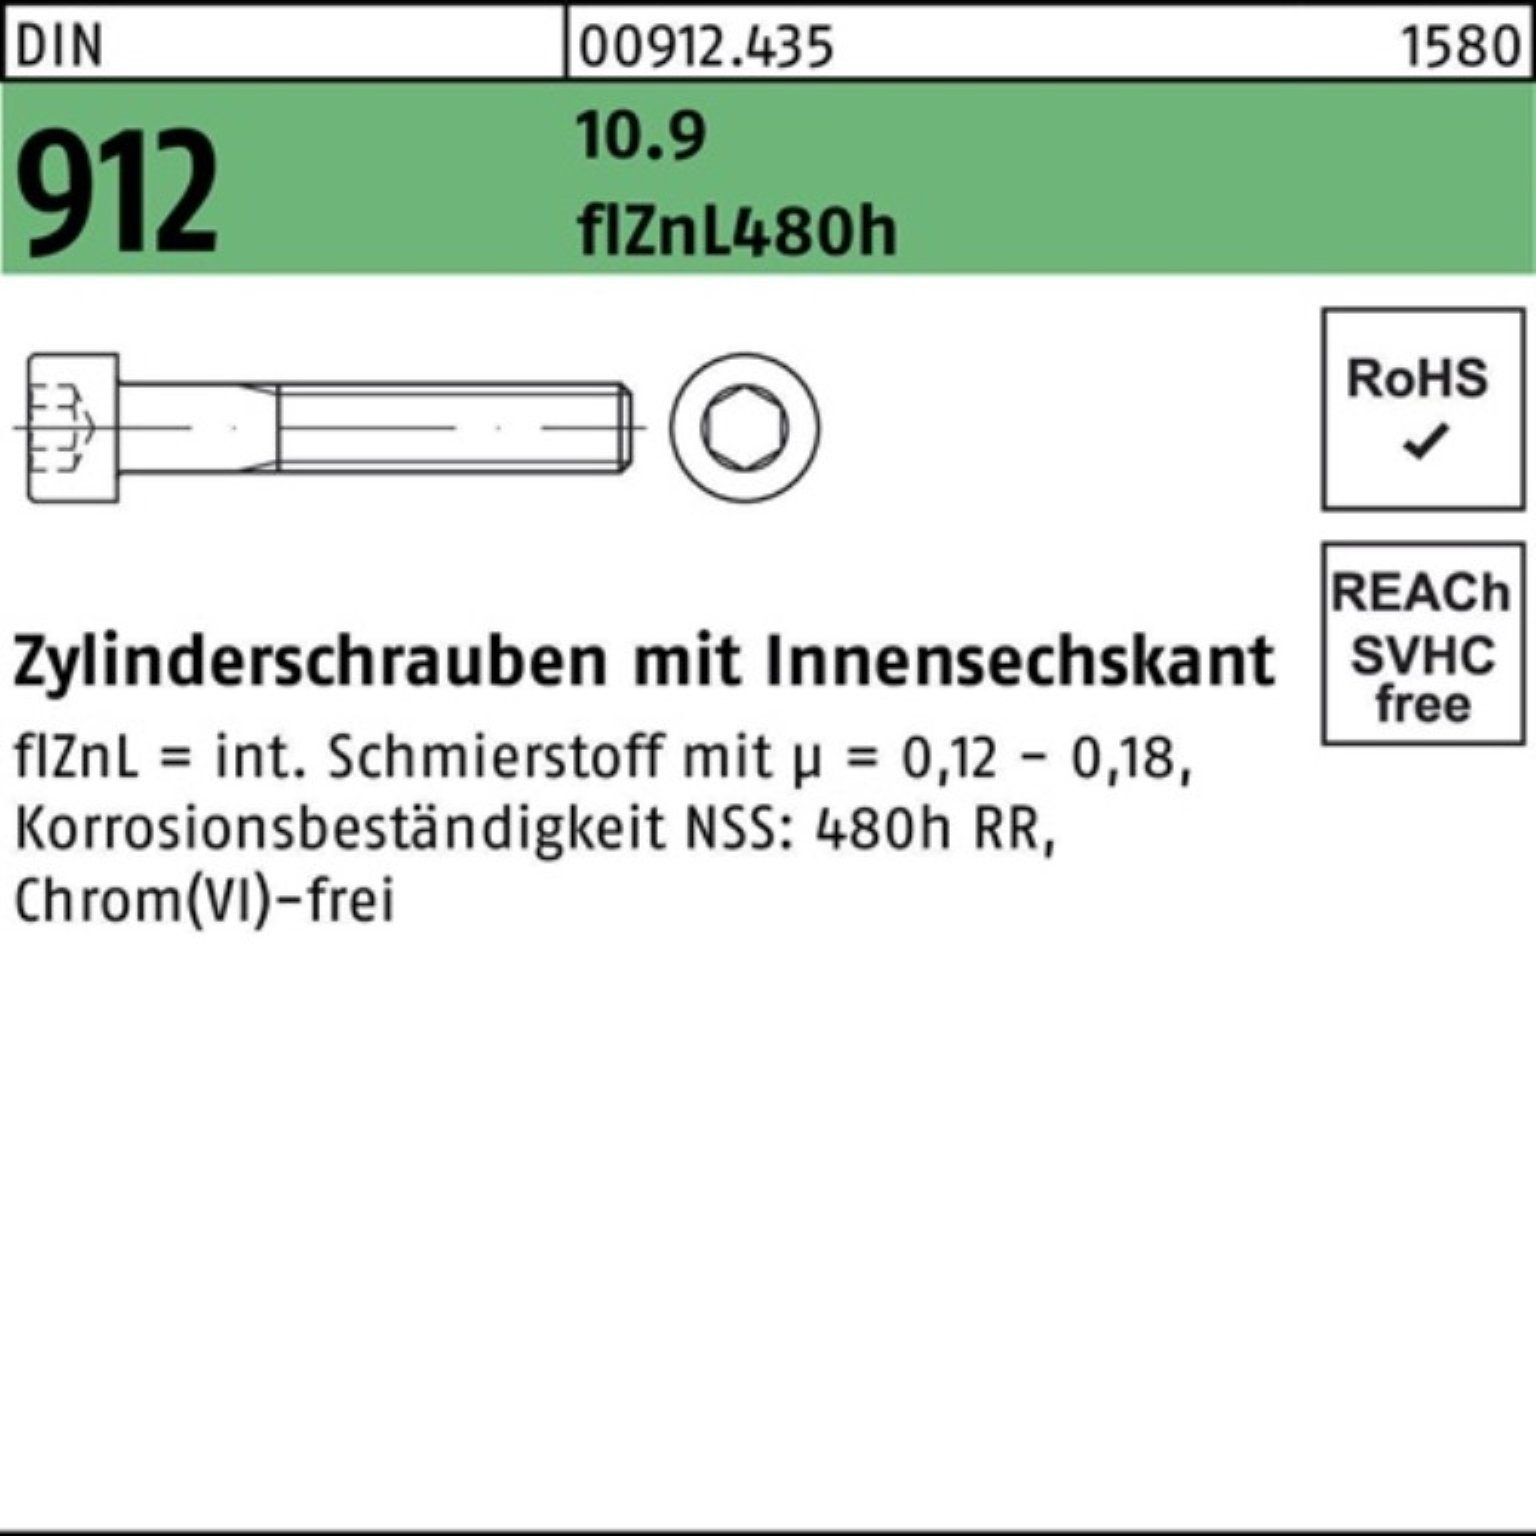 Zylinderschraube DIN Zylinderschraube 100er Innen-6kt Reyher 10.9 M20x80 flZnL/nc/x/x 912 Pack